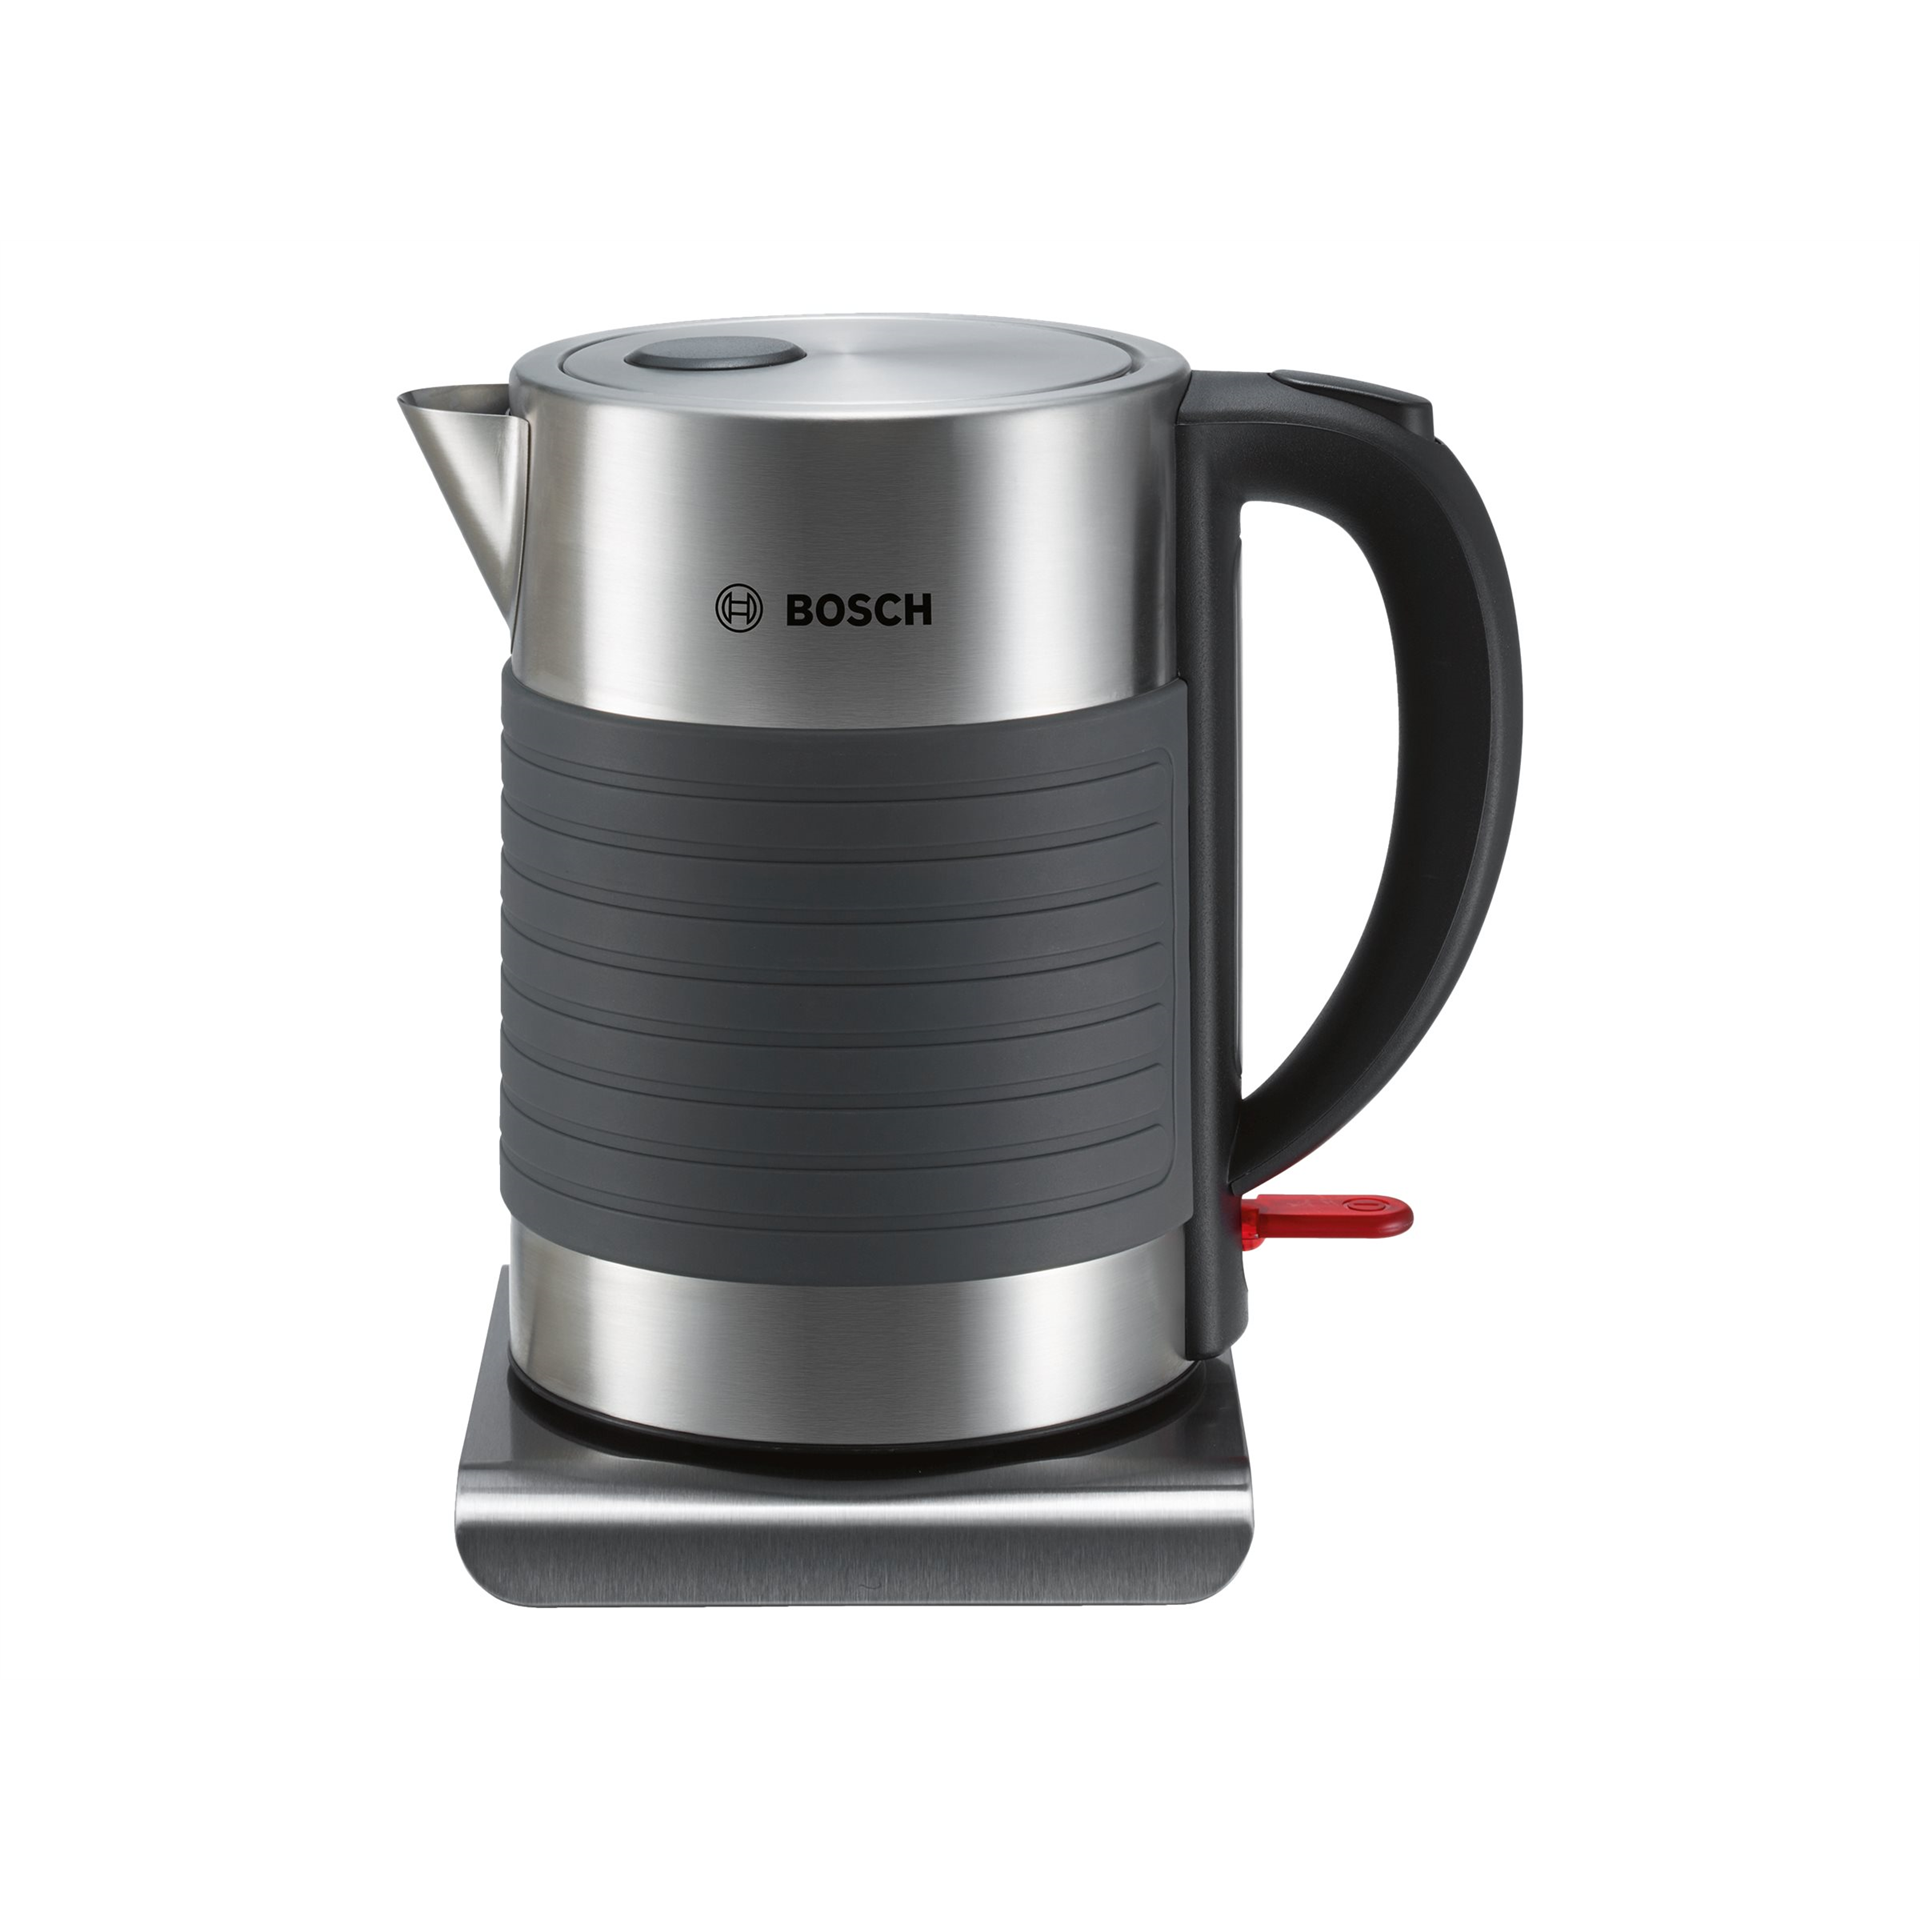 Bosch TWK7S05 Standard kettle, Stainless steel/Plastic, Grey, 2200 W, 360° rotational base, 1.7 L